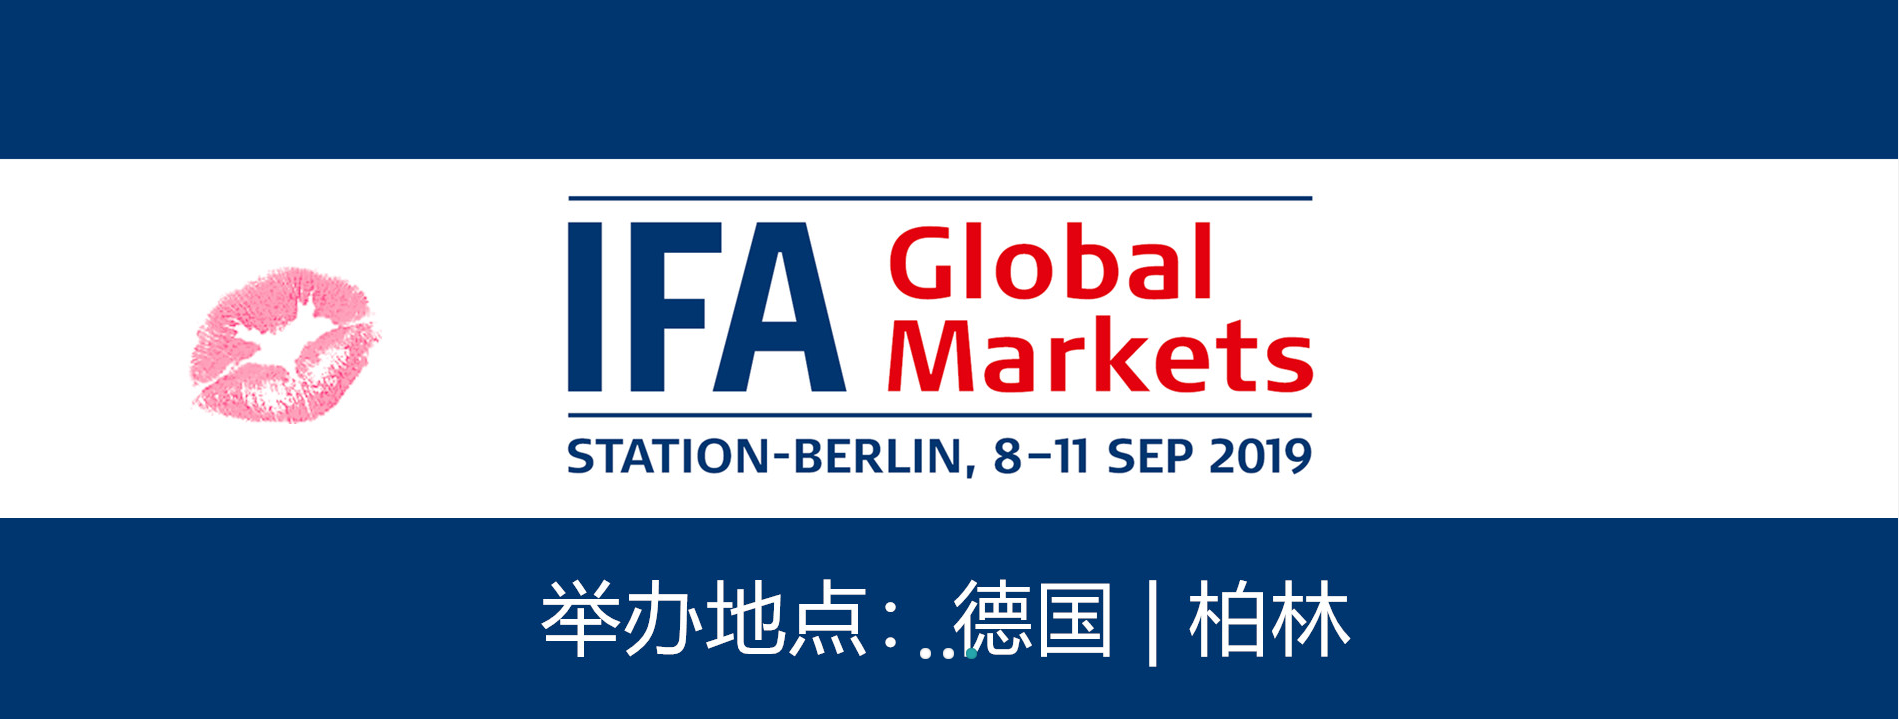 德国IFA展展会 柏林消费电子展IFA参展 门票预订